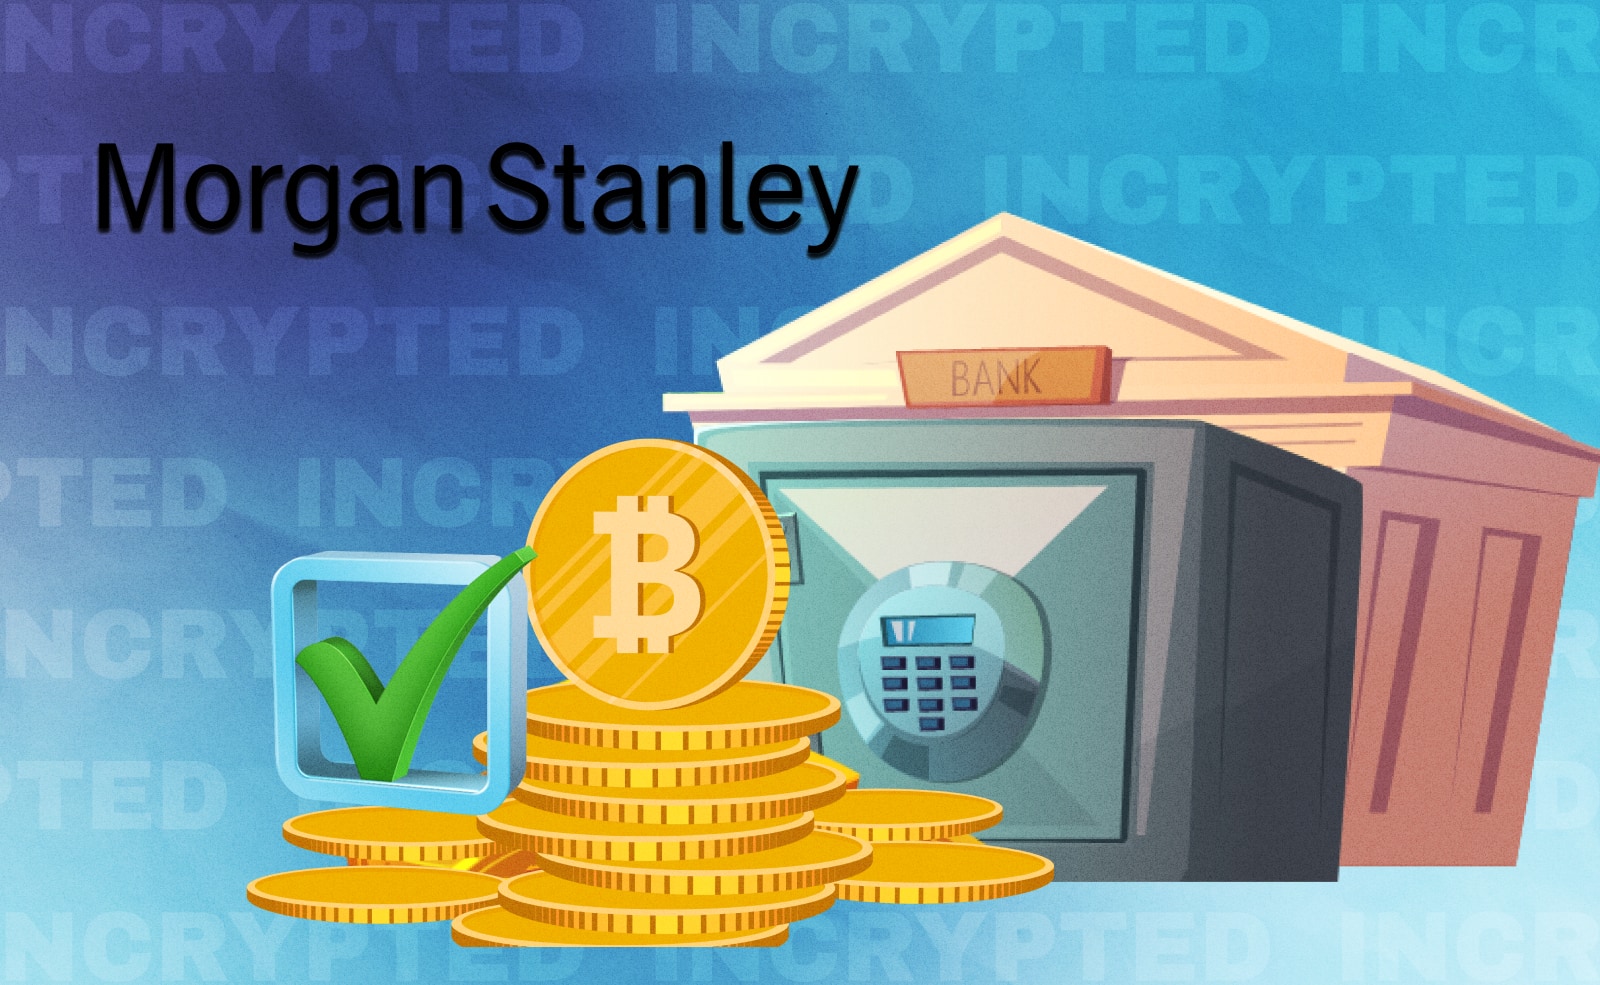 Один из крупнейших инвестиционных банков в мире Morgan Stanley инвестировал $3,6 млн в BTC через Grayscale Bitcoin Trust. Компания впервые за долгое время вложилась в криптовалюту, еще и добавив эту позицию в один из самых консервативных своих фондов.